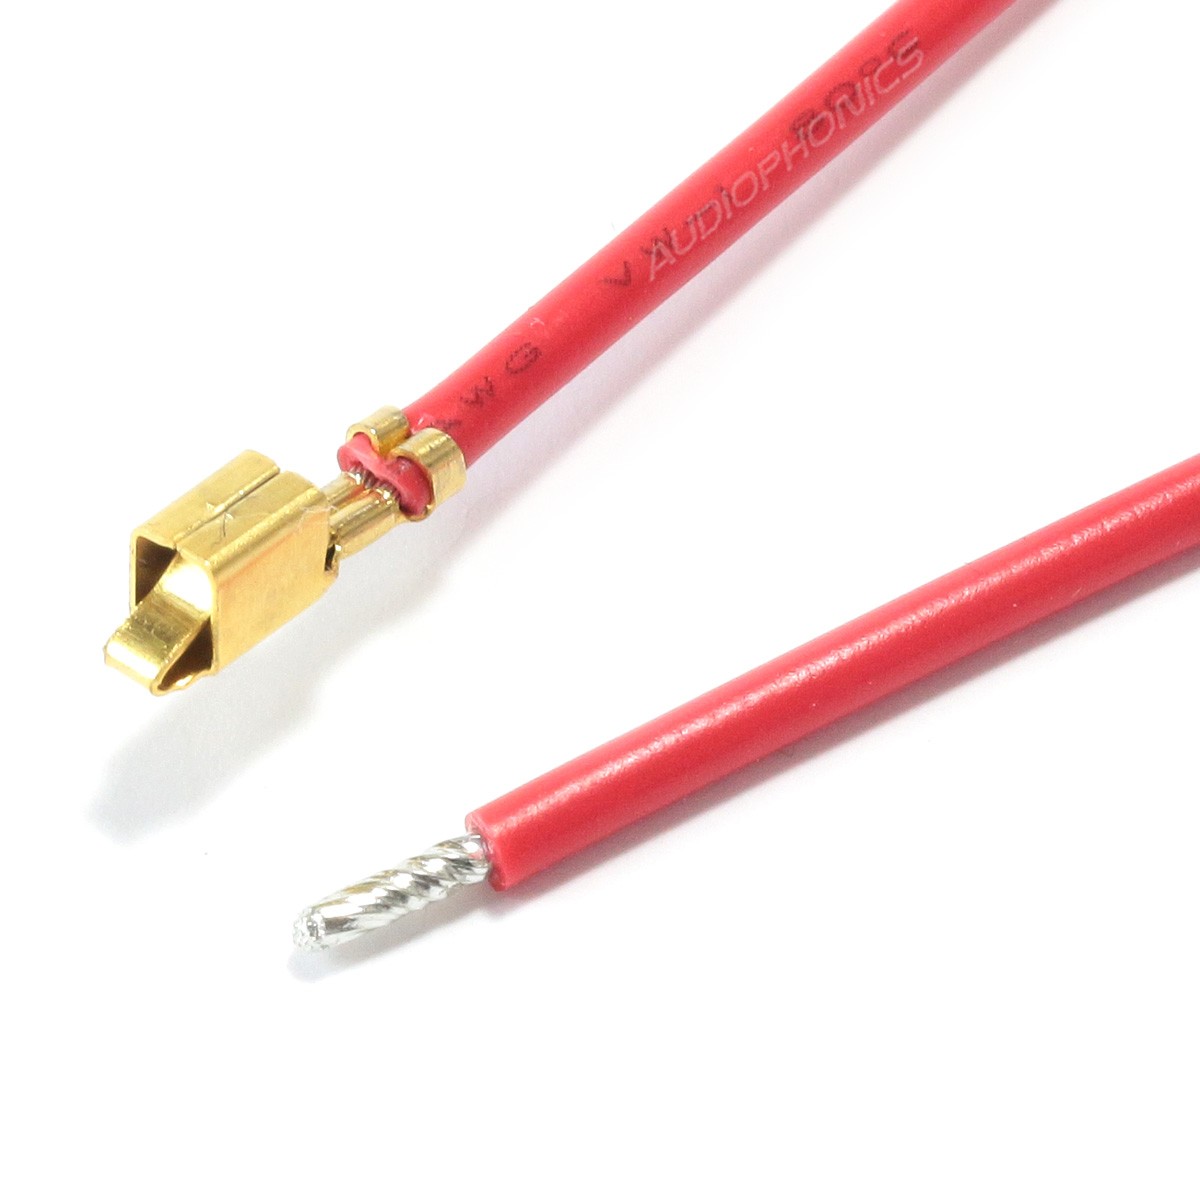 Câble VH 3.96mm Femelle vers Fil Nu Sans Boîtier 1 Pôle Plaqué Or 20cm Rouge (x10)